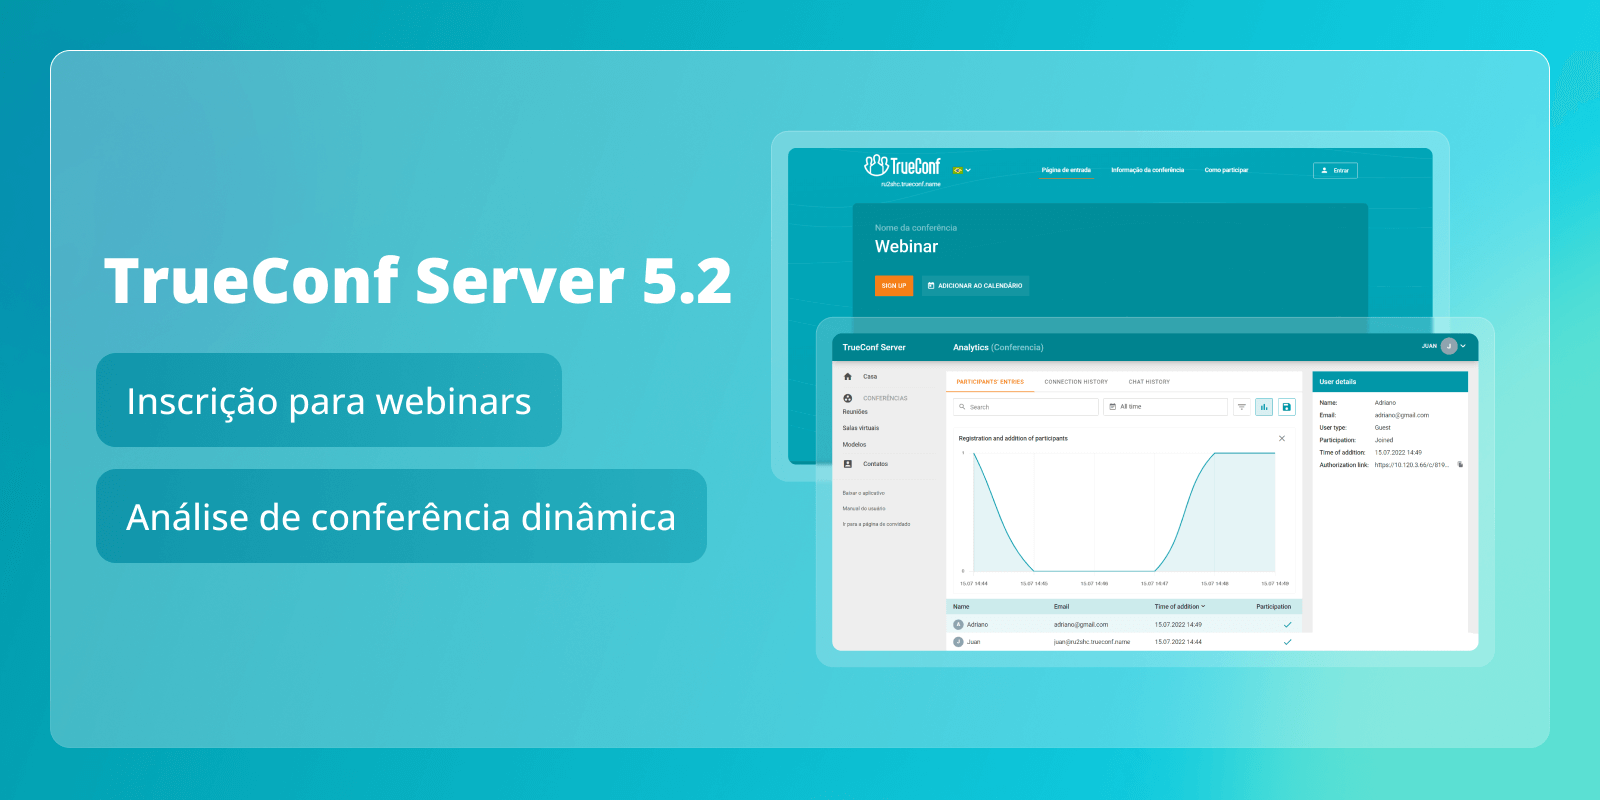 TrueConf Server 5.2: registro para webinars e análises dinâmicas de conferência 6